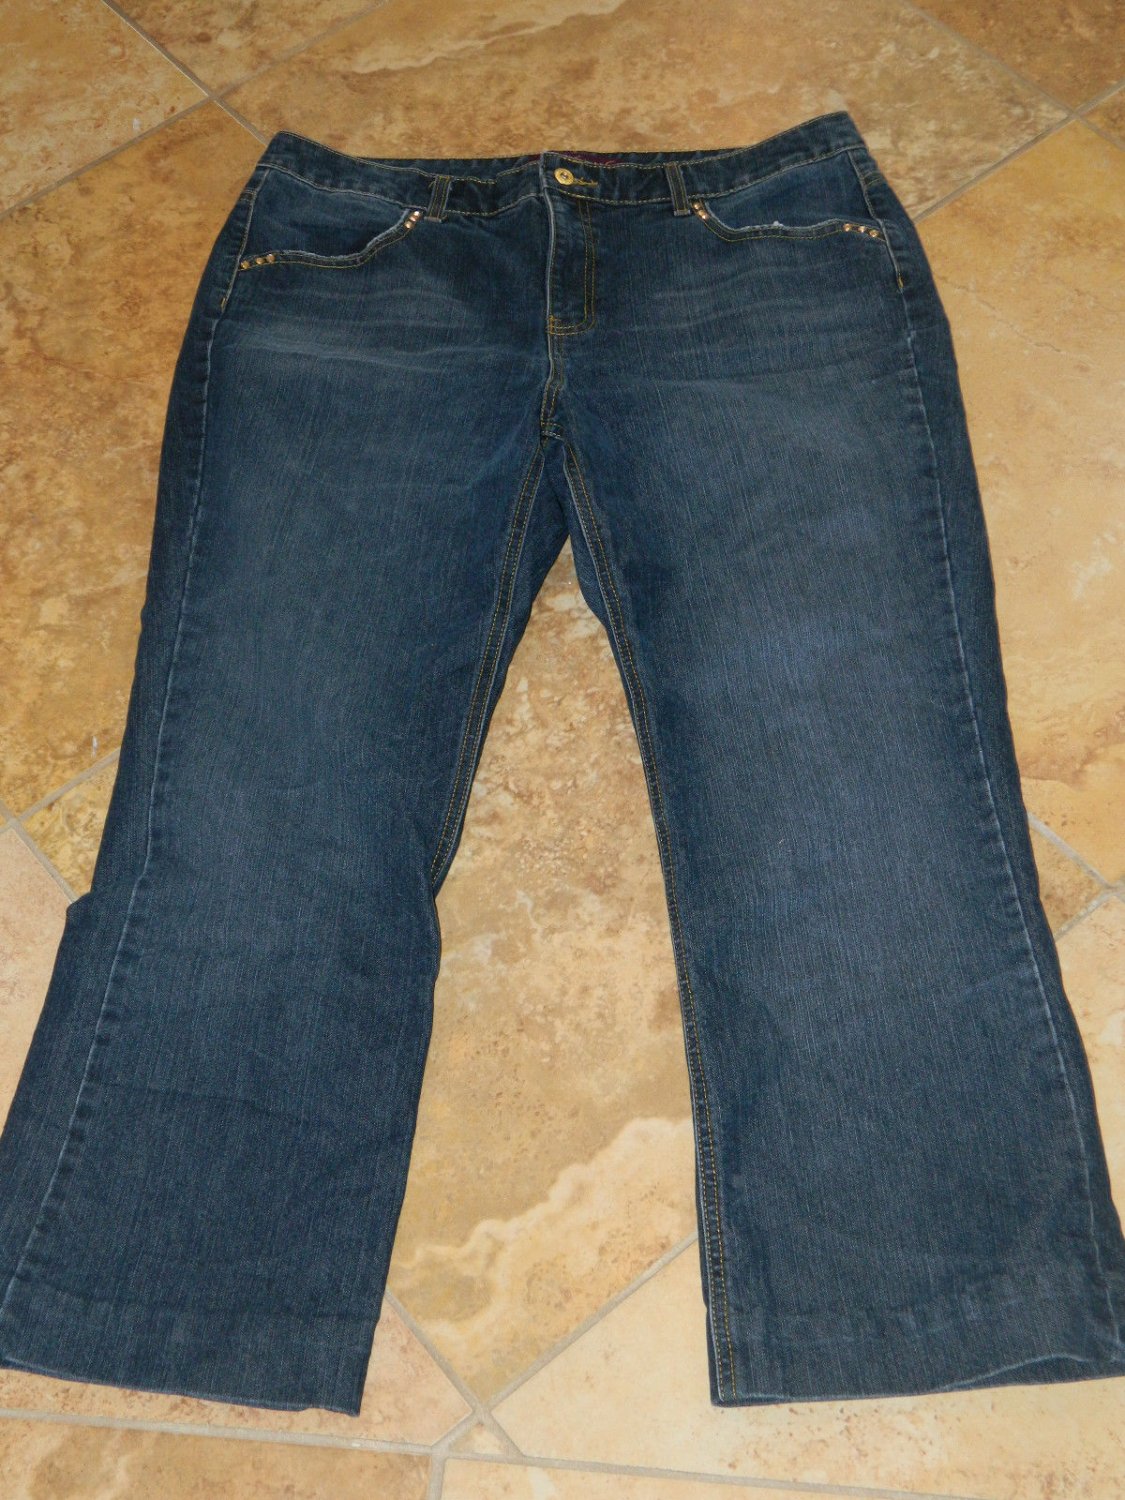 GLORIA VANDERBILT Plus Size Women's Denim Blue Jeans Pants 40x28 Size 20